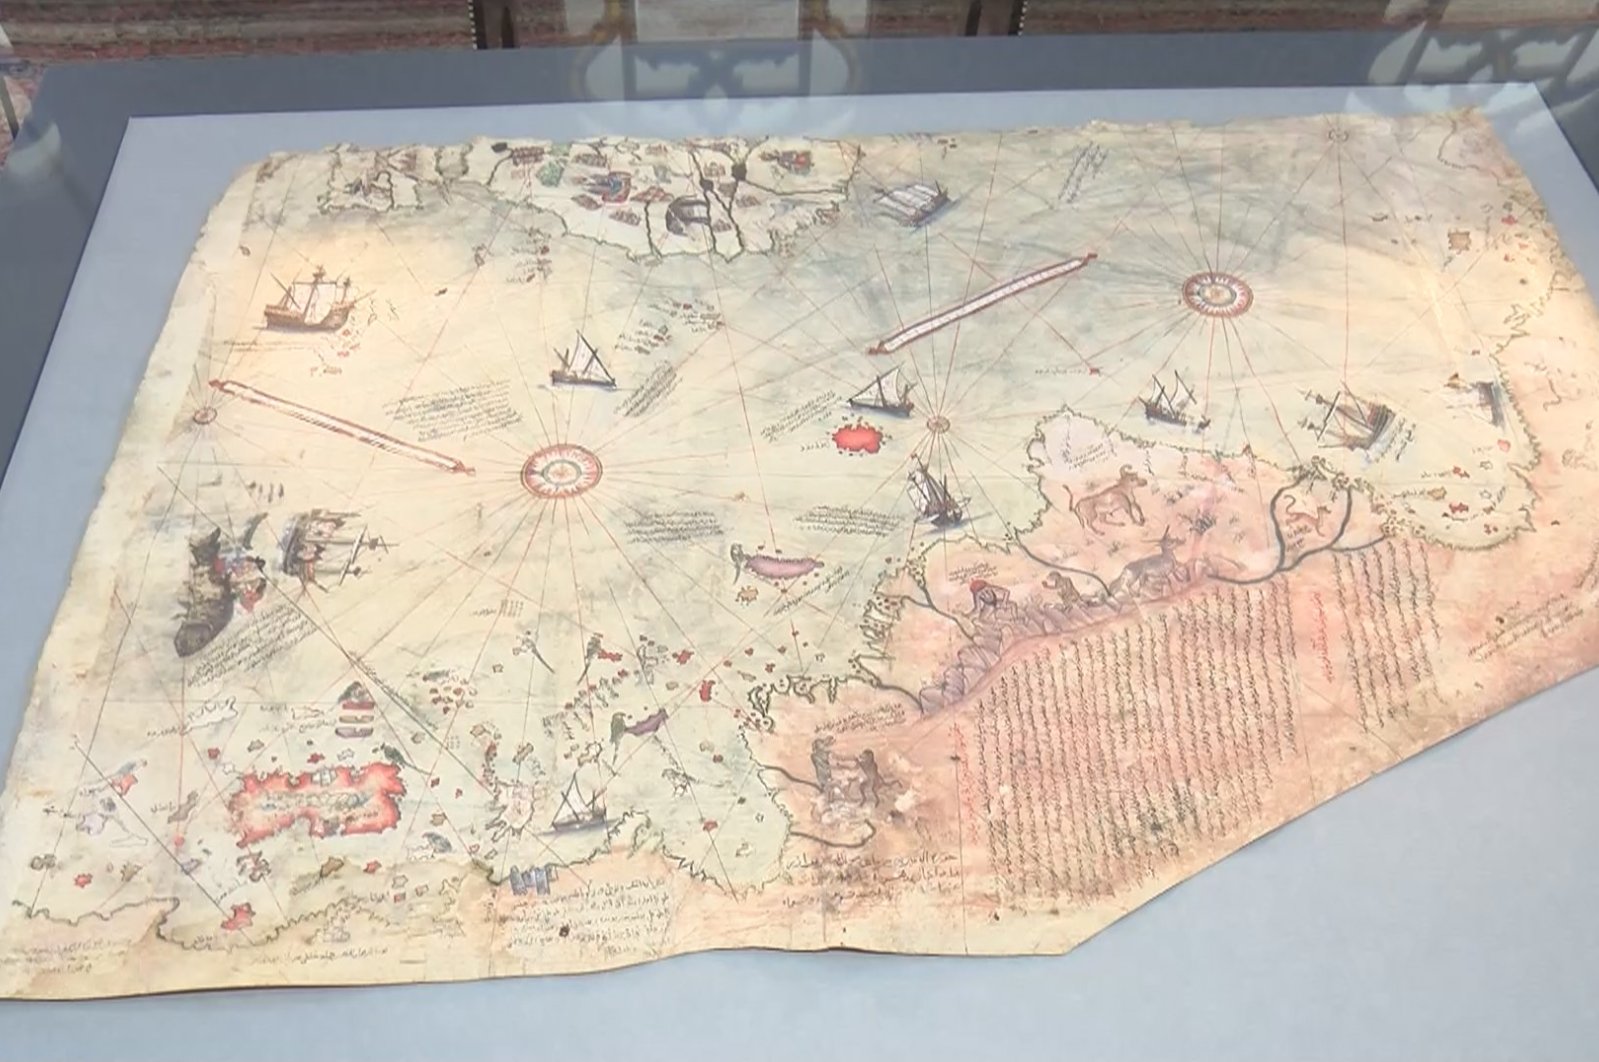 Peta dunia Piri Reis kembali ditampilkan di Istana Topkapı Istanbul